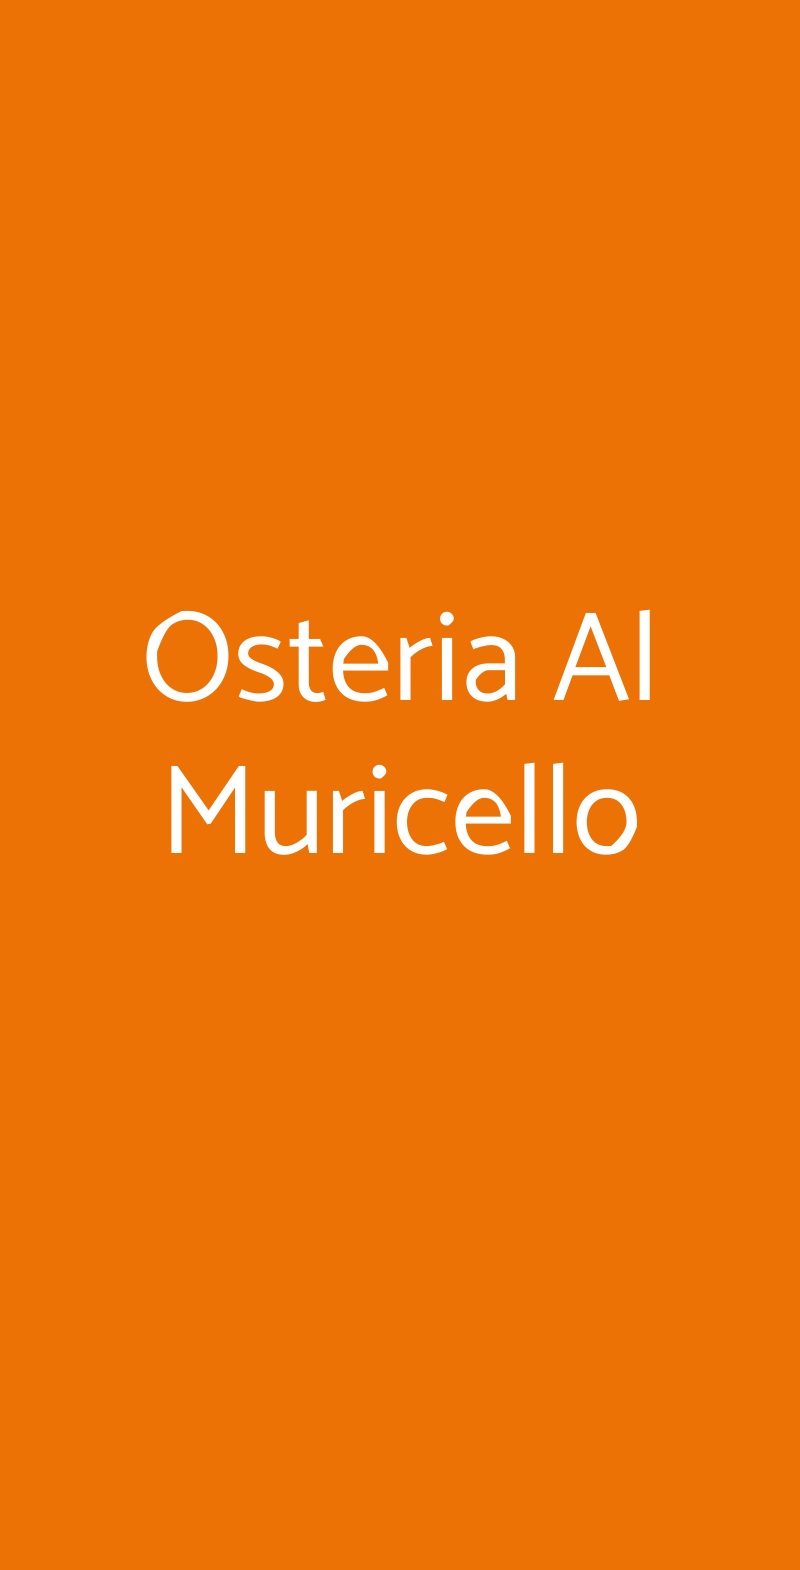 Osteria Al Muricello Messina menù 1 pagina